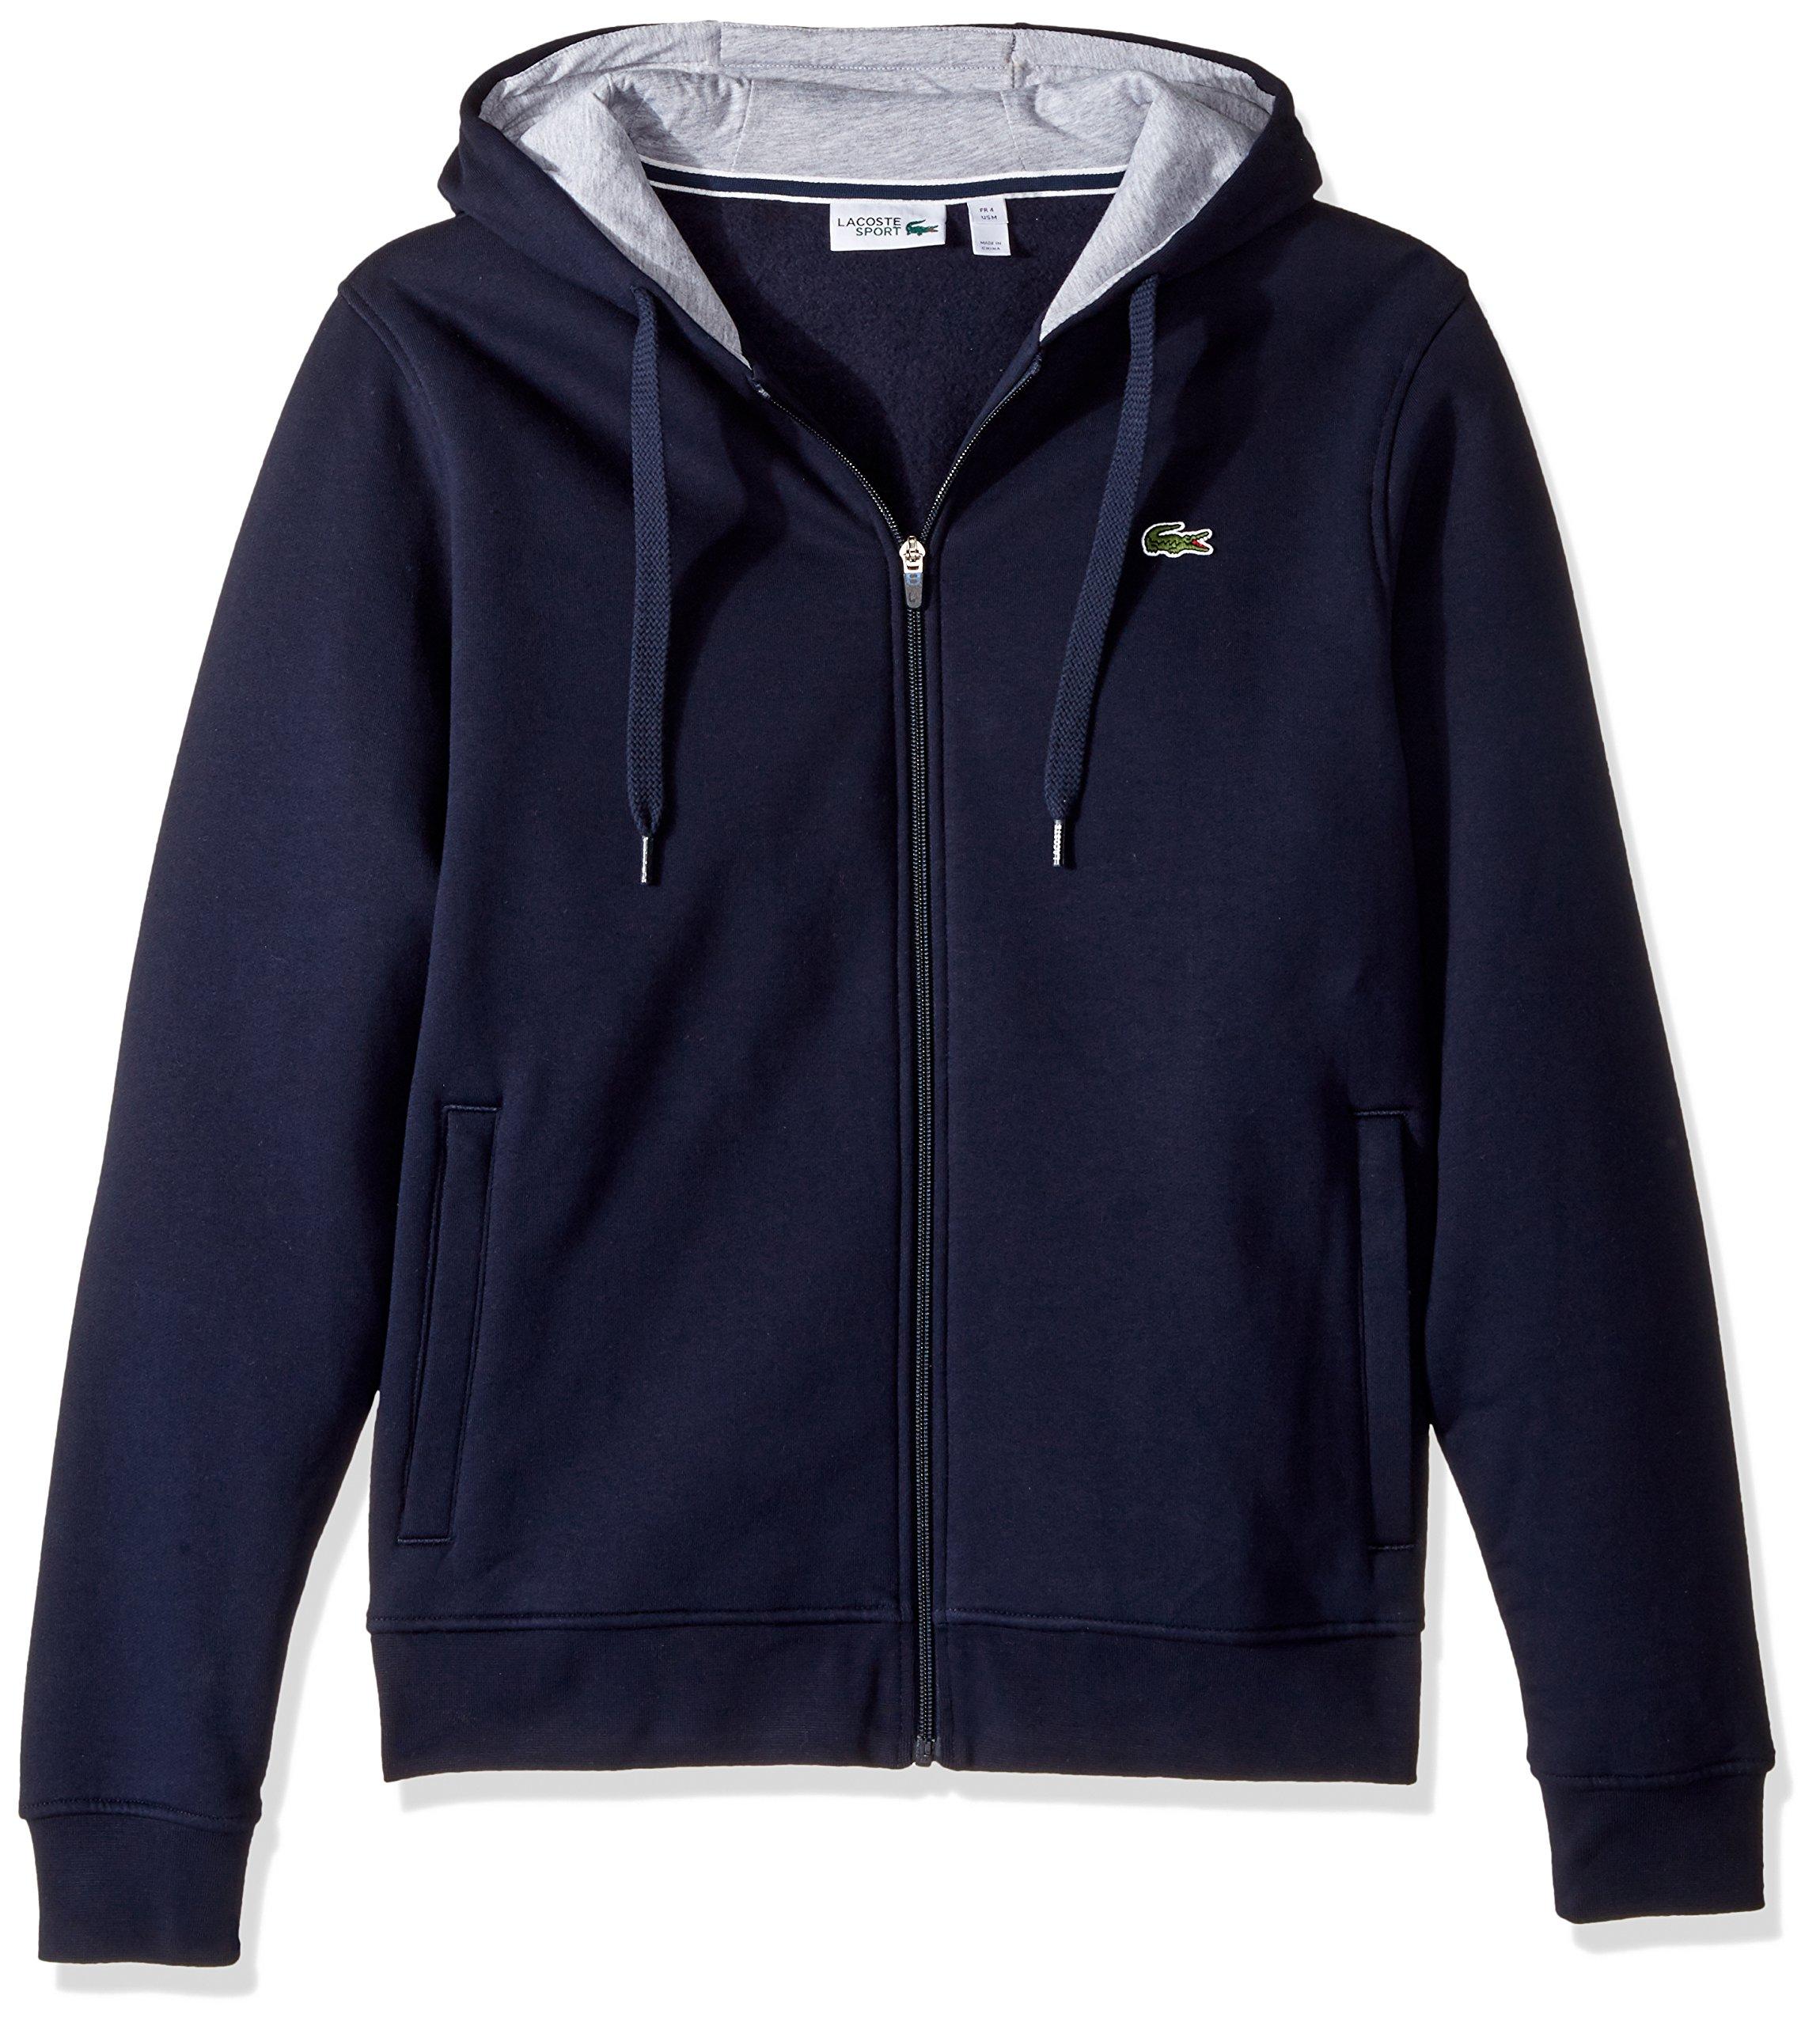 Lacoste Sport Fleece Zip Up Hooded Sweatshirt in Blue for Men - Save 10 ...